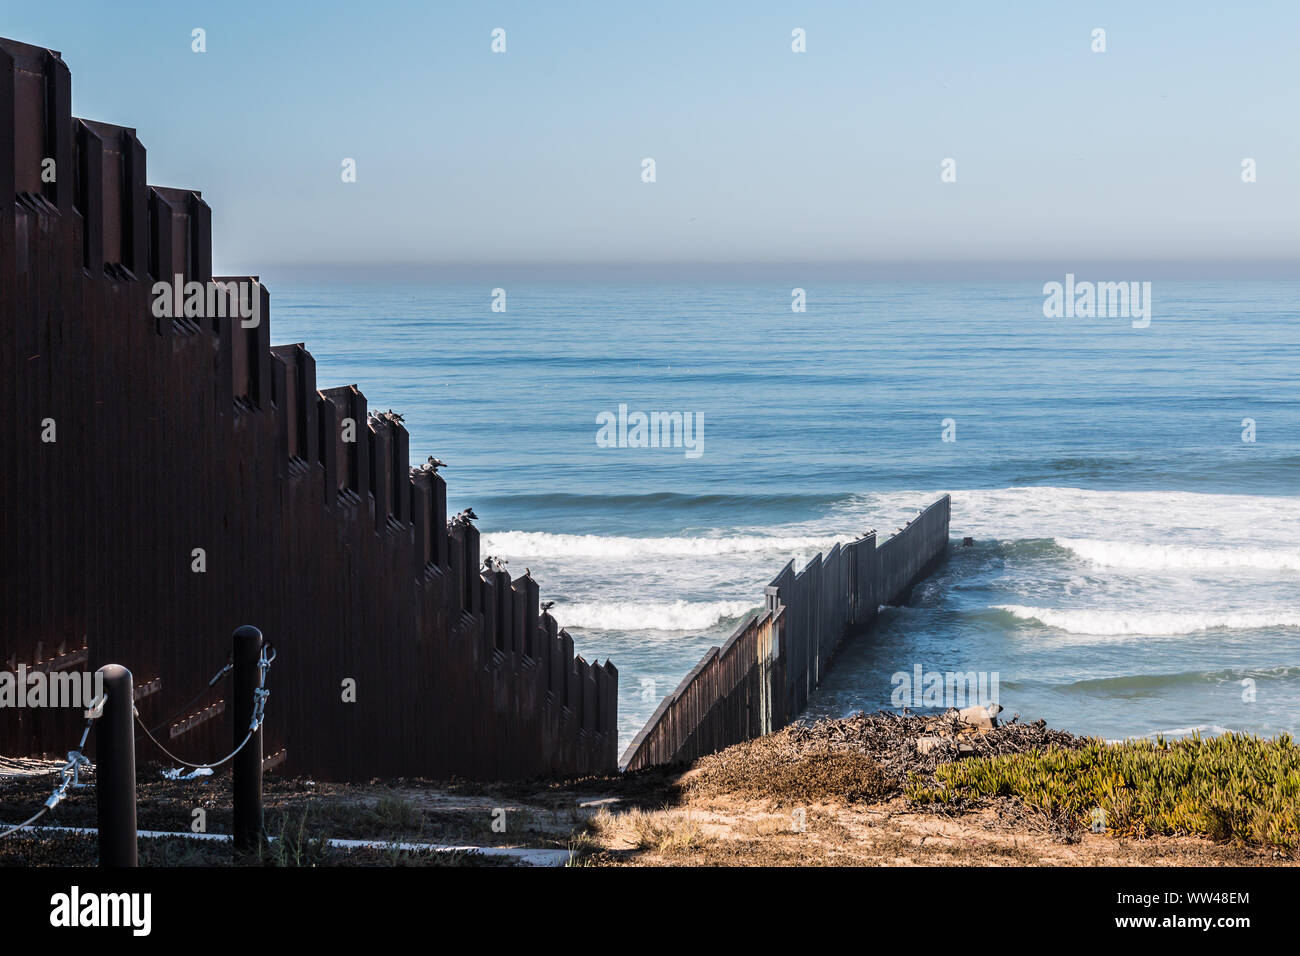 Frontiera internazionale di parete che si estende fuori nell' oceano Pacifico e la separazione di San Diego, California da Tijuana, Messico. Foto Stock